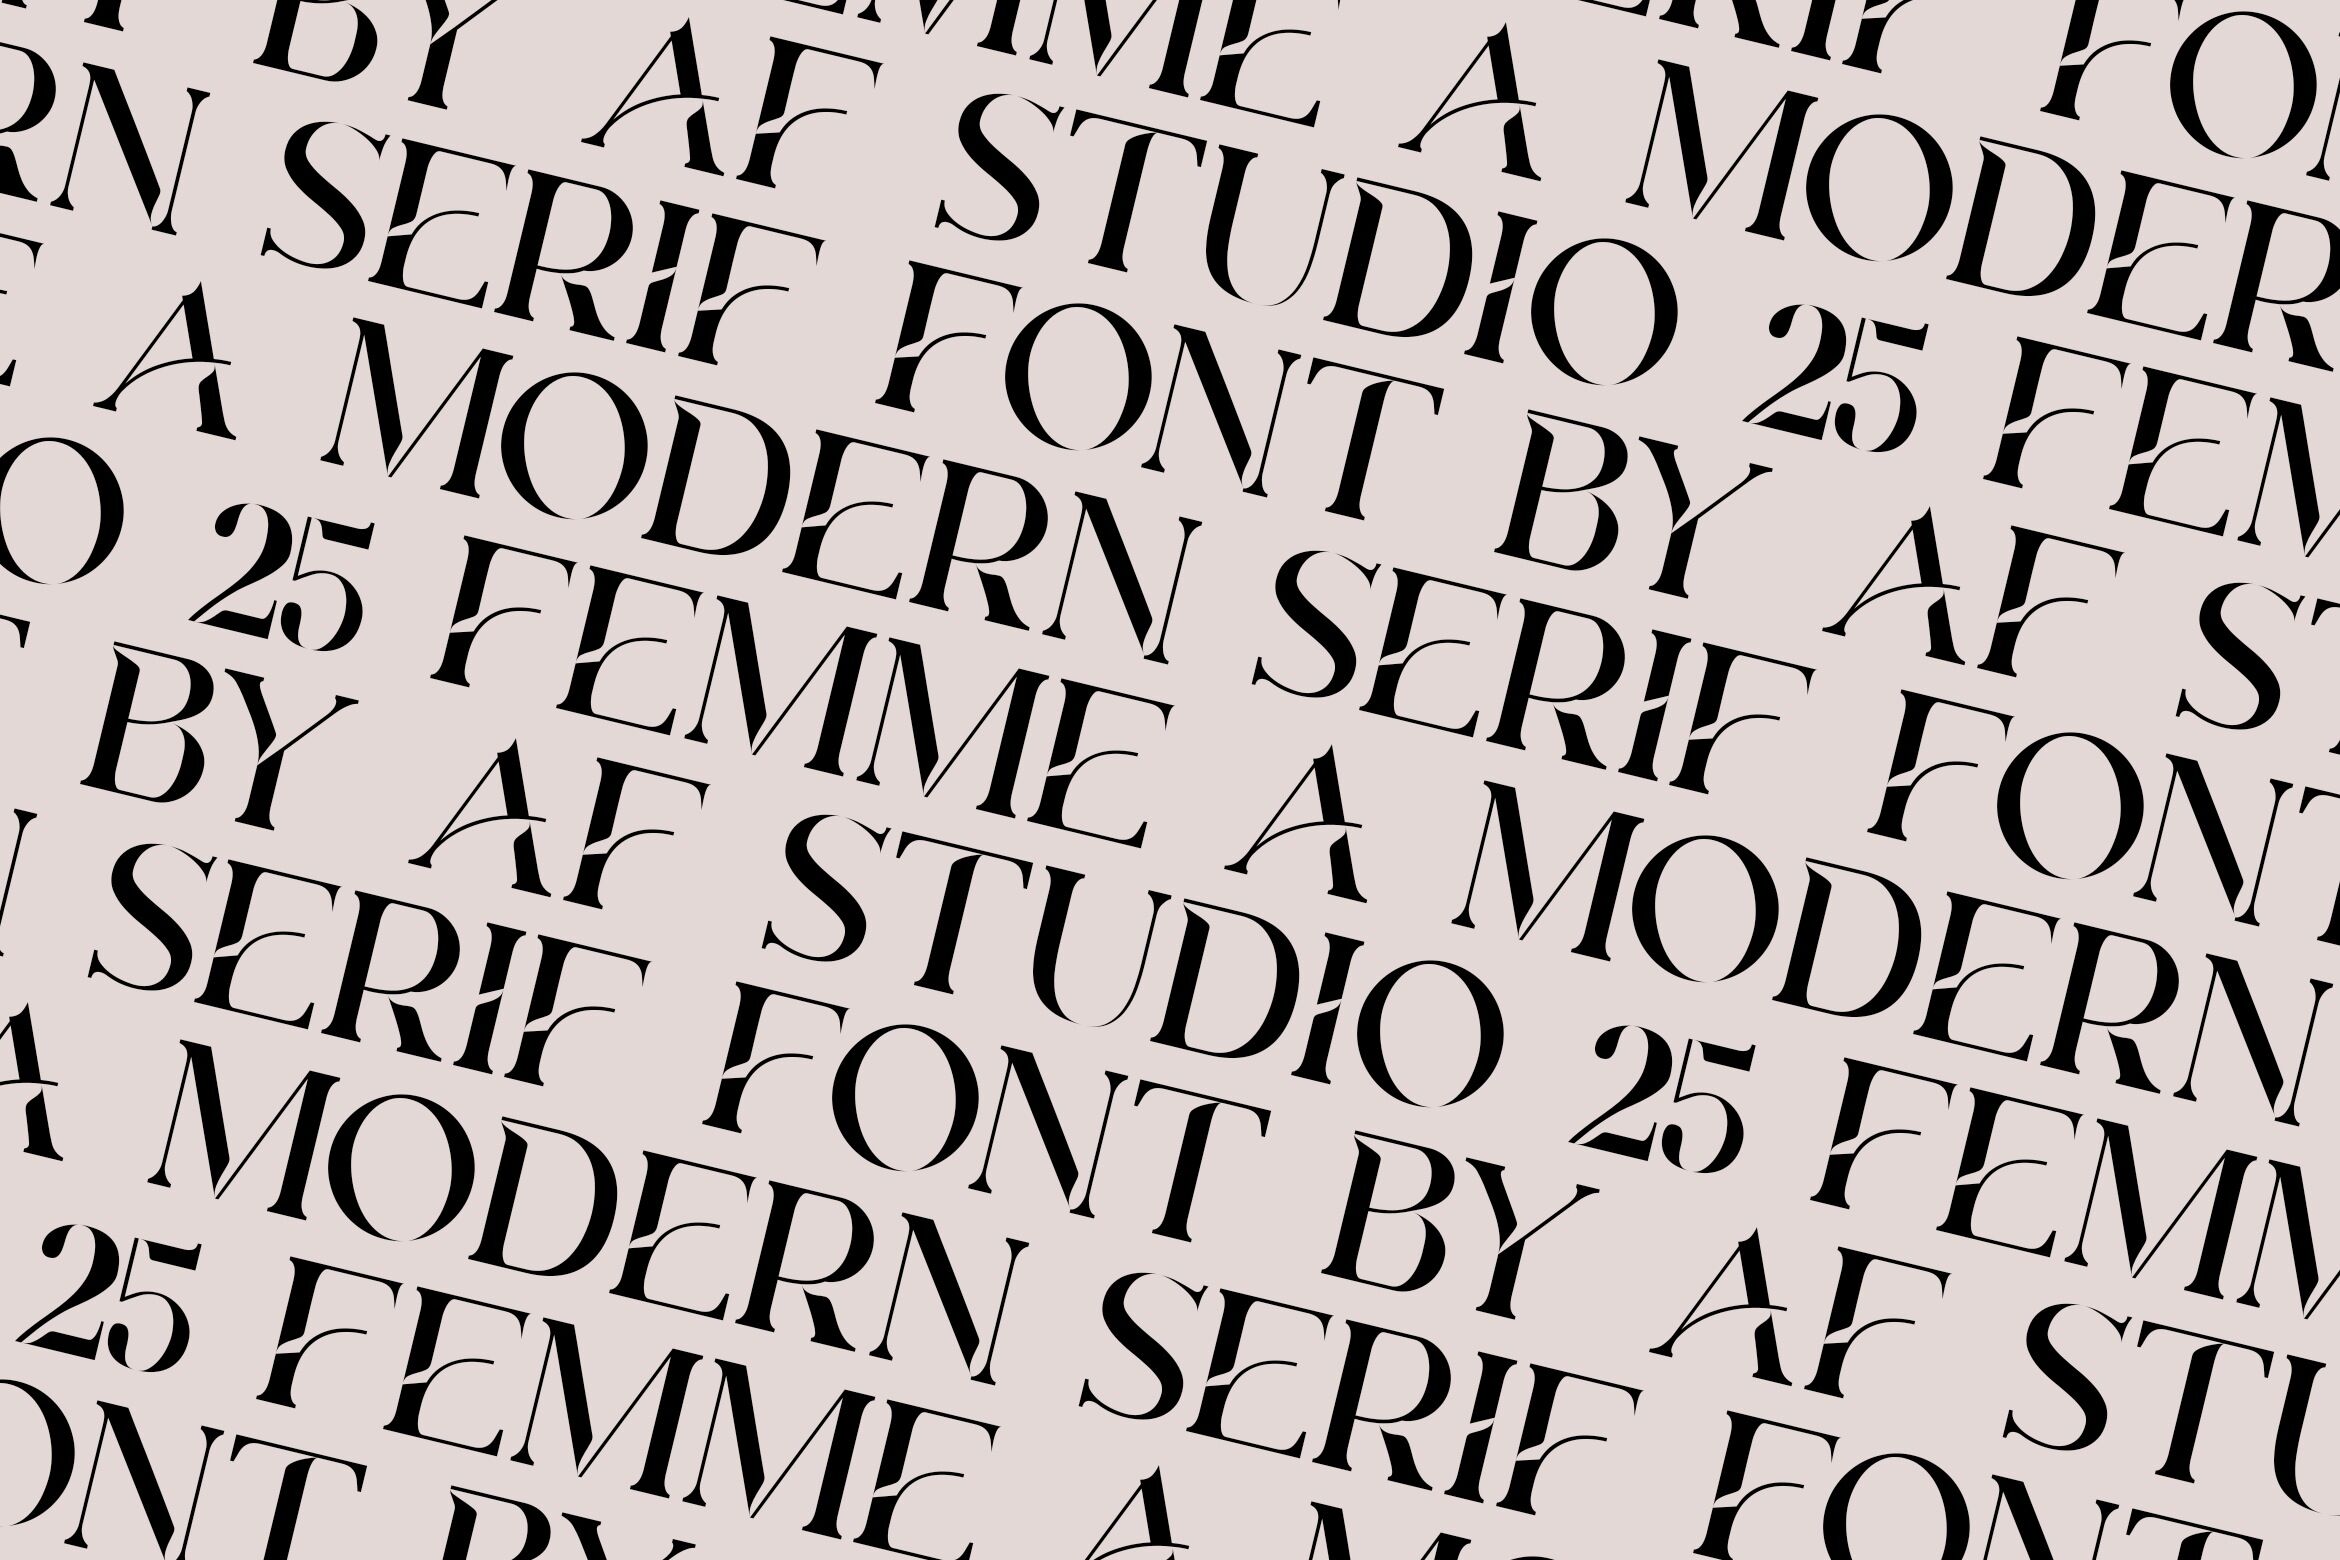 Femme - a Modern Serif Font By AF STUDIO 25 | TheHungryJPEG